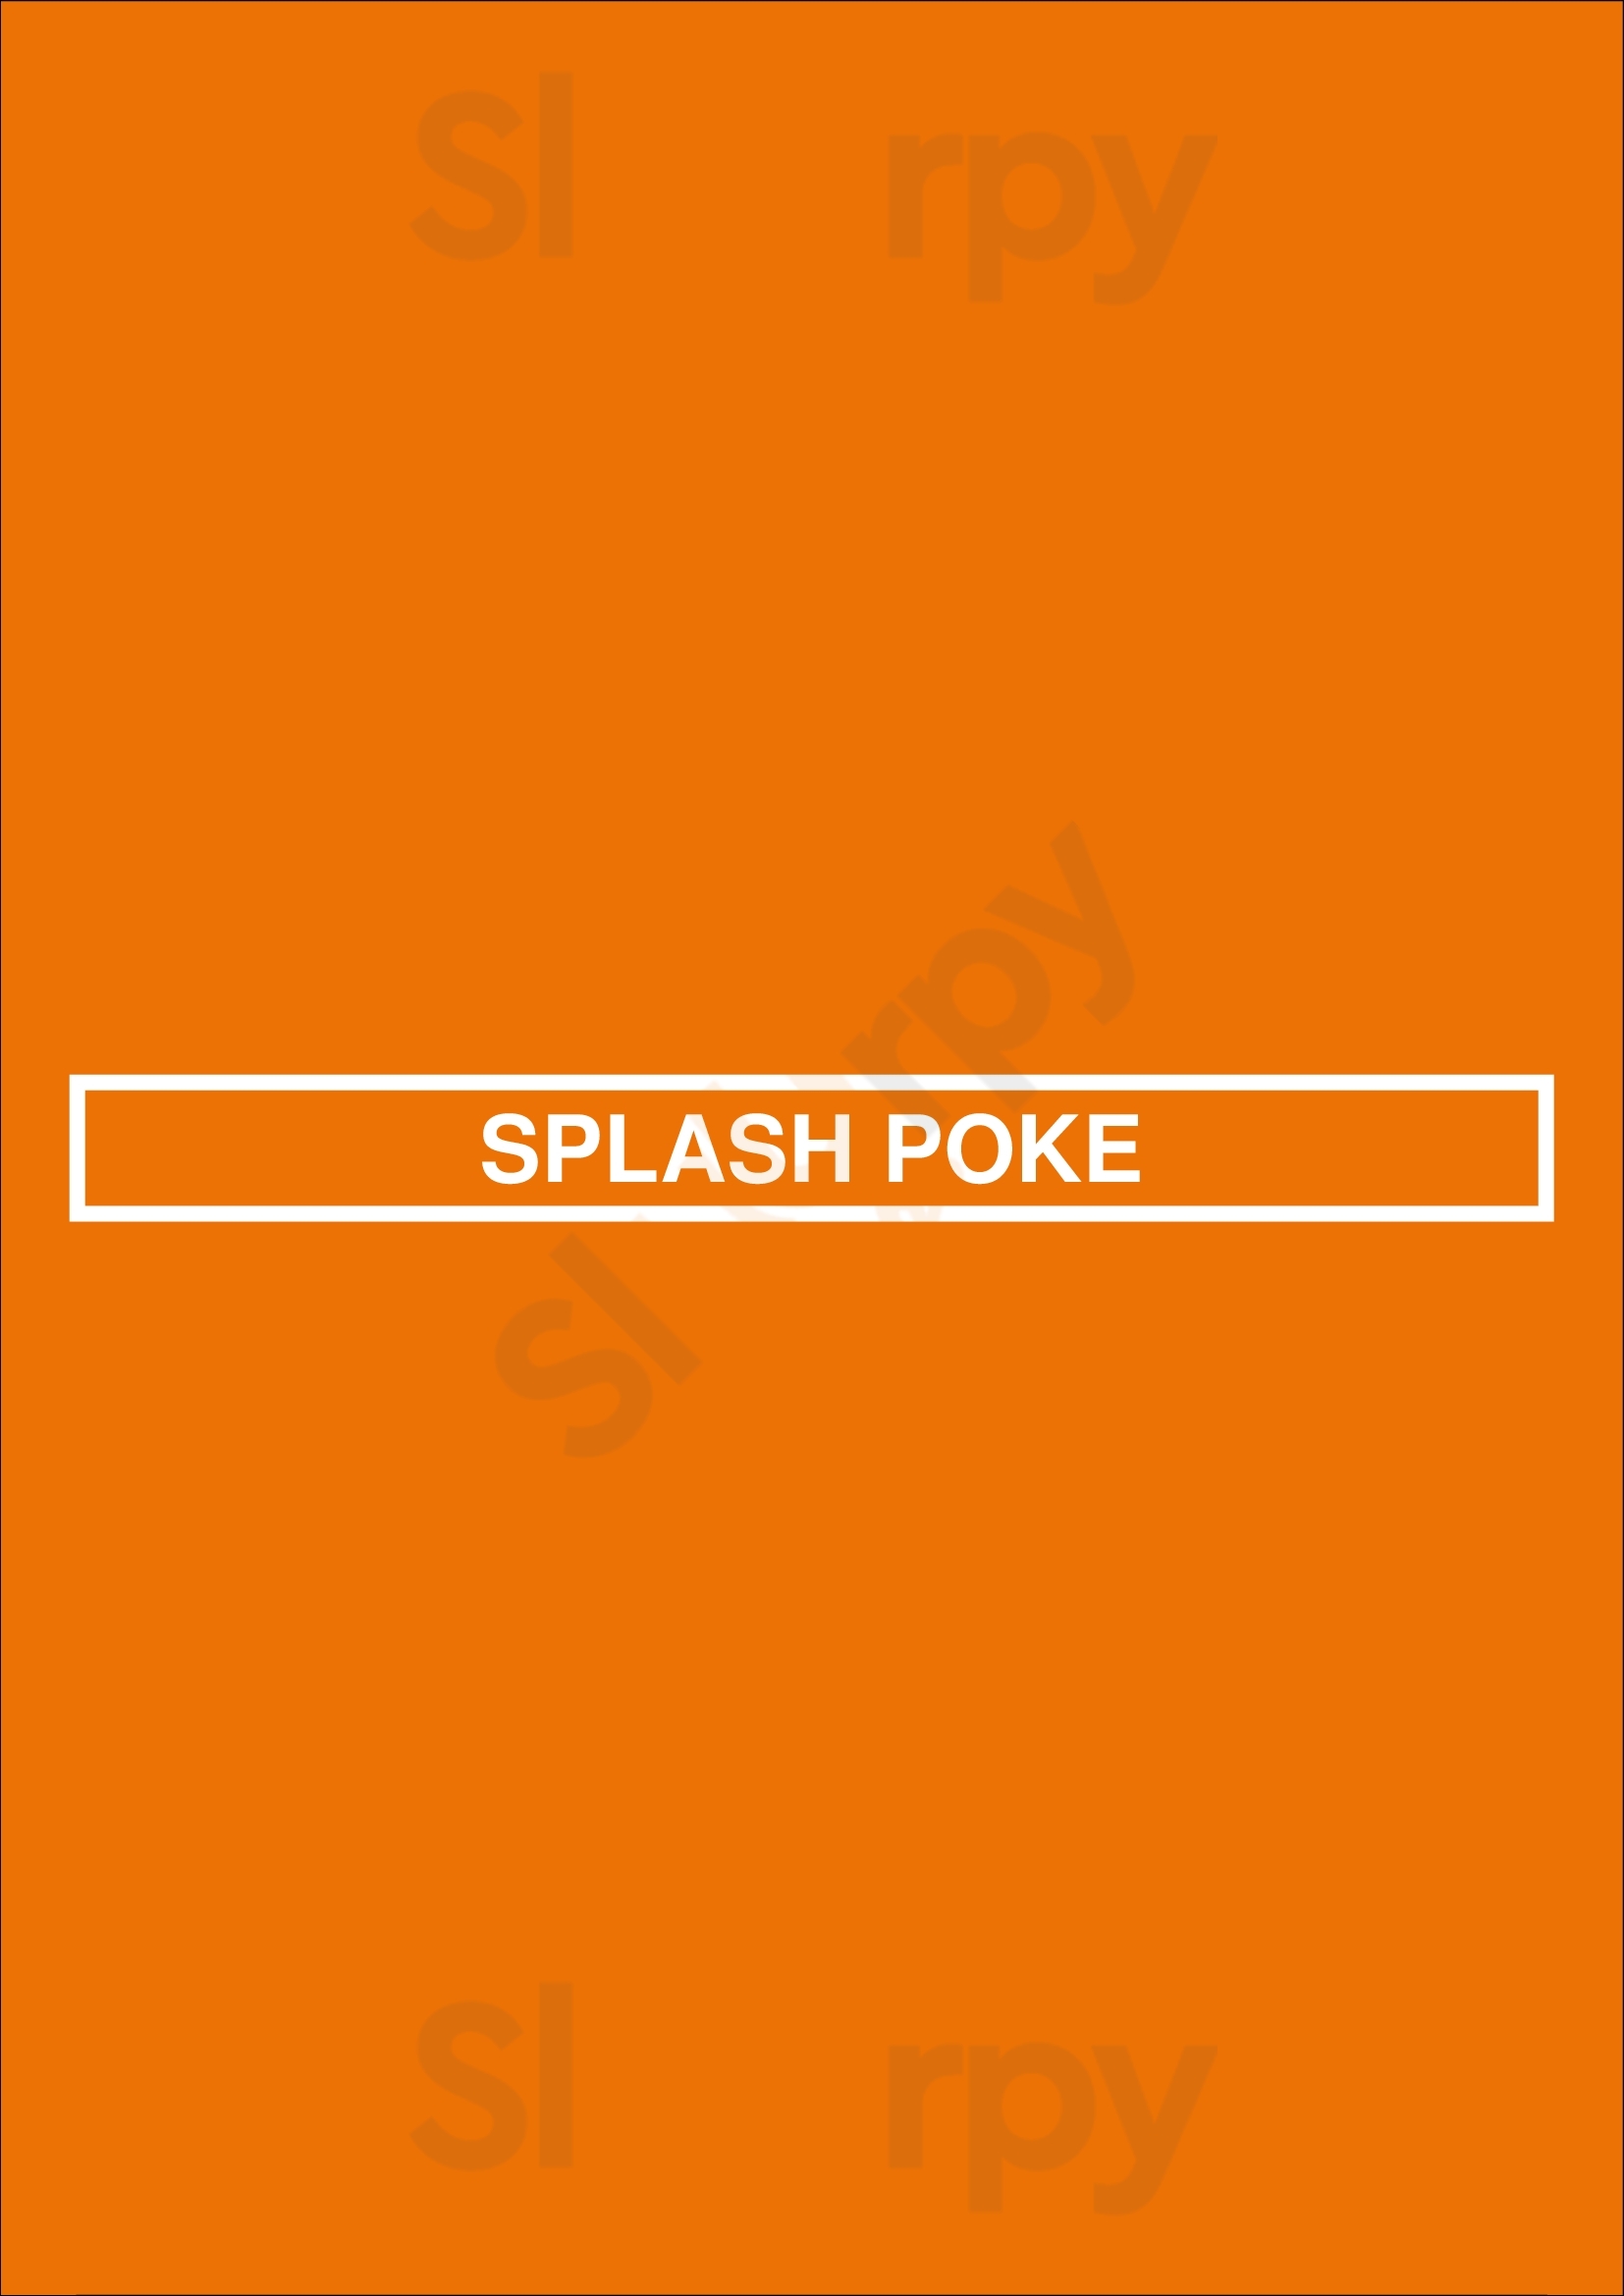 Splash Poke Edmonton Menu - 1